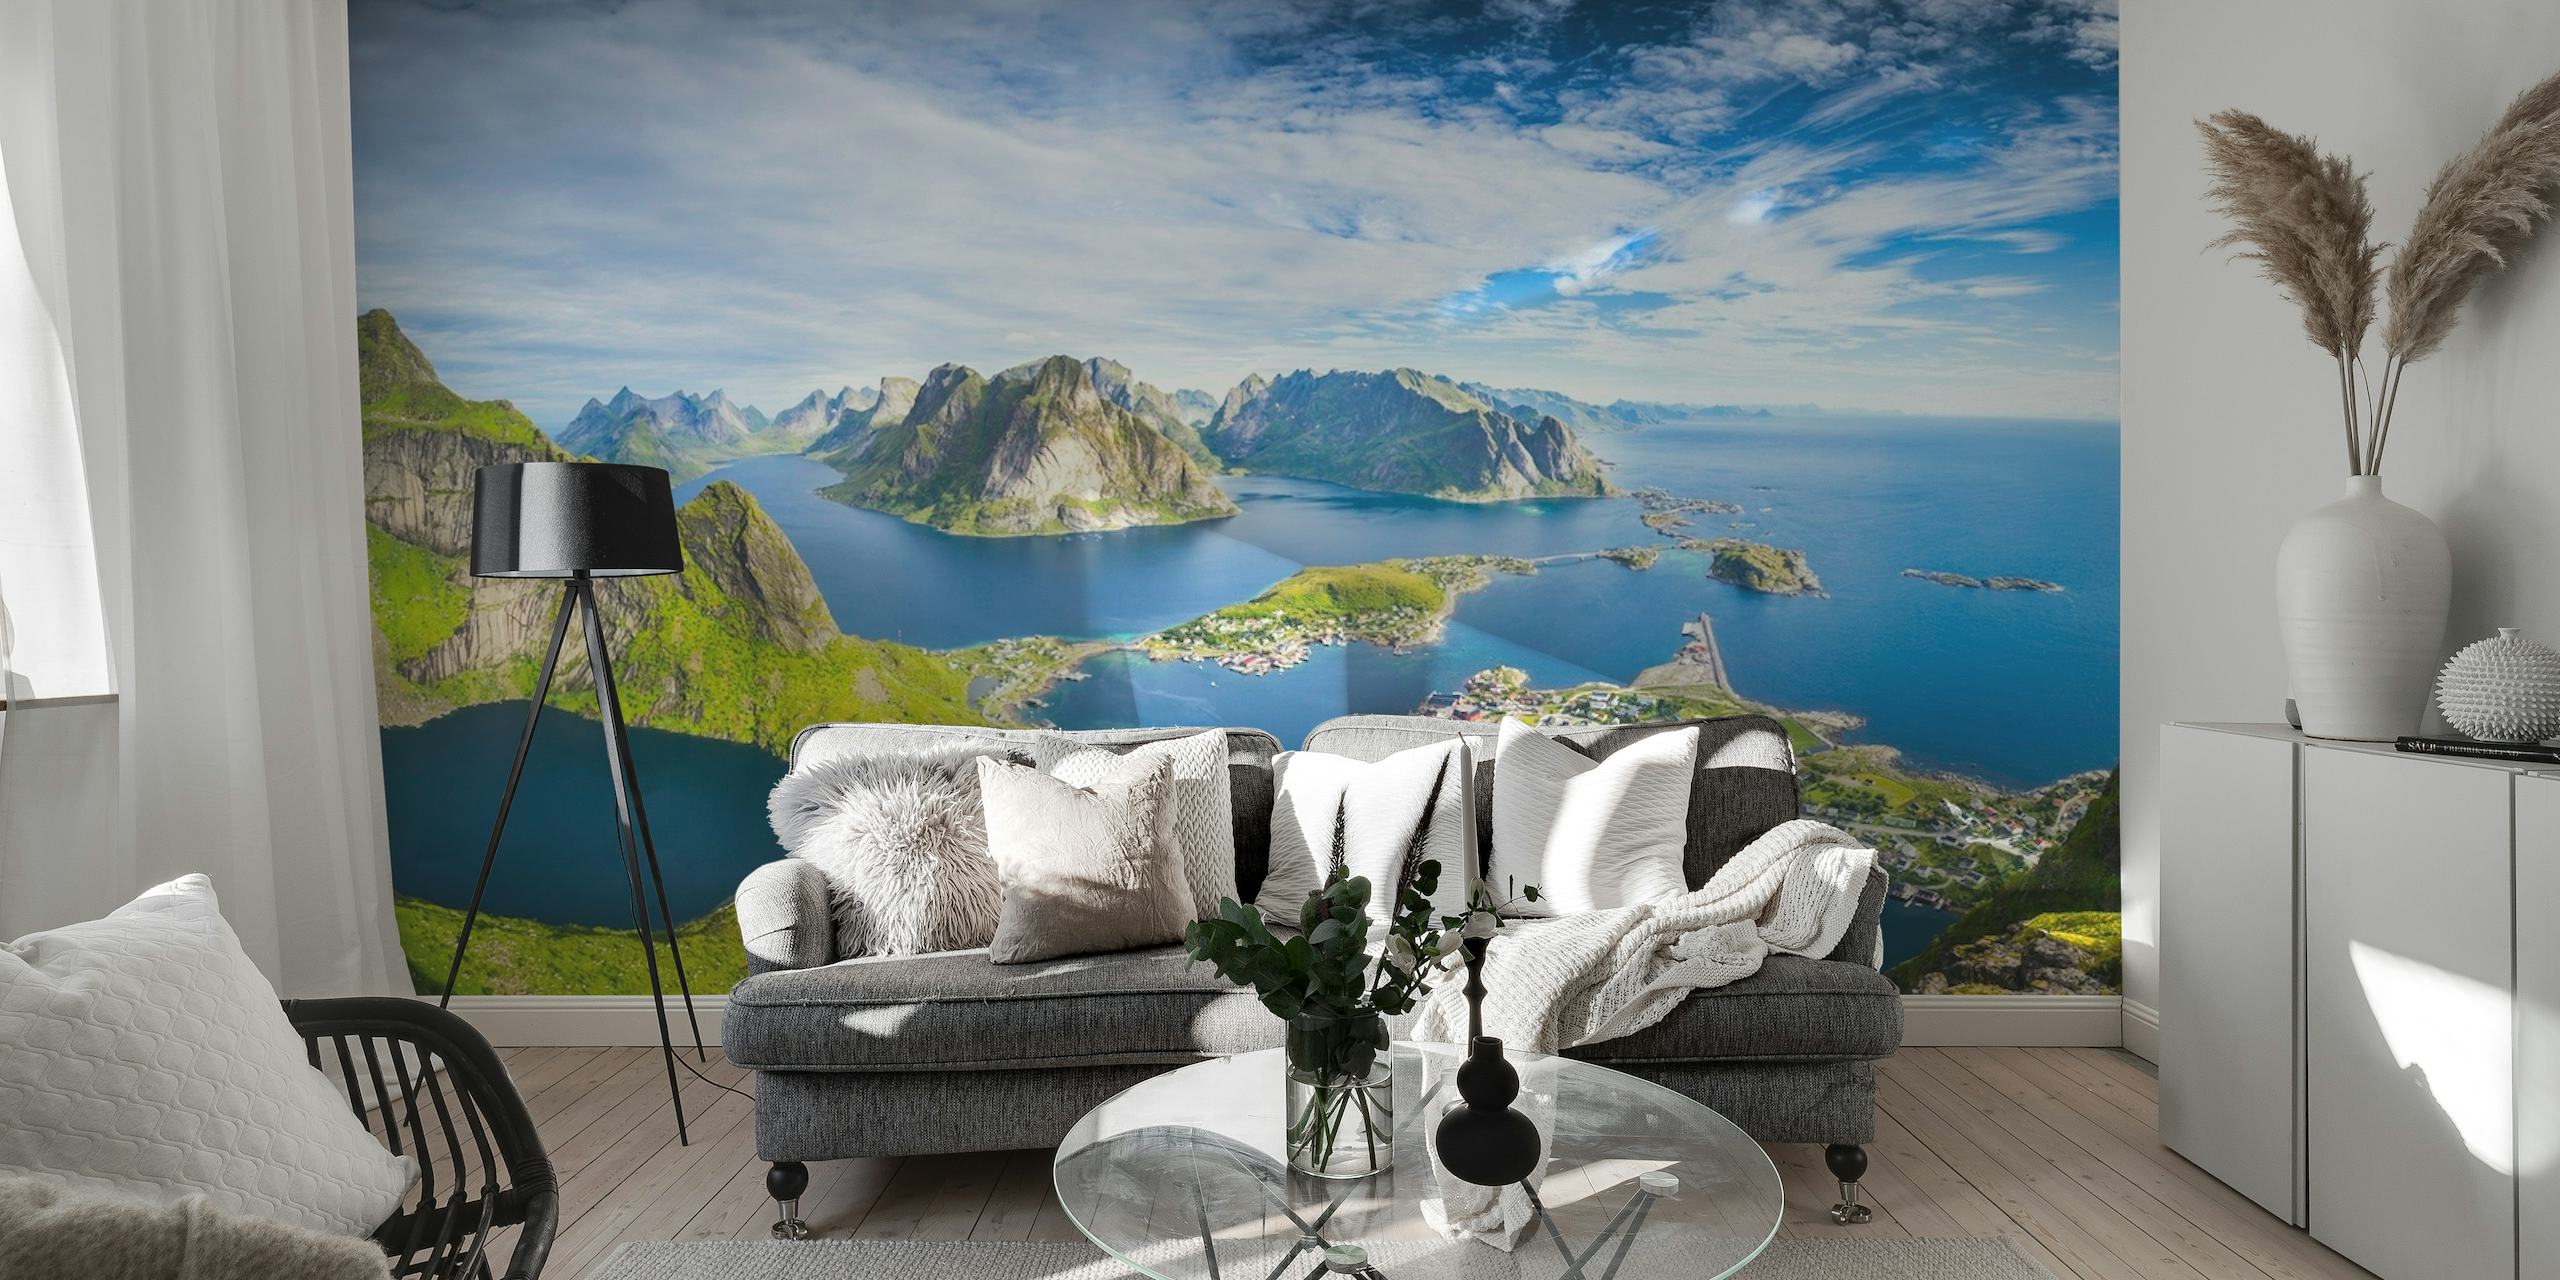 Fototapeta Reine Lofoten przedstawiająca malownicze piękno norweskich fiordów, gór i nadmorskich wiosek